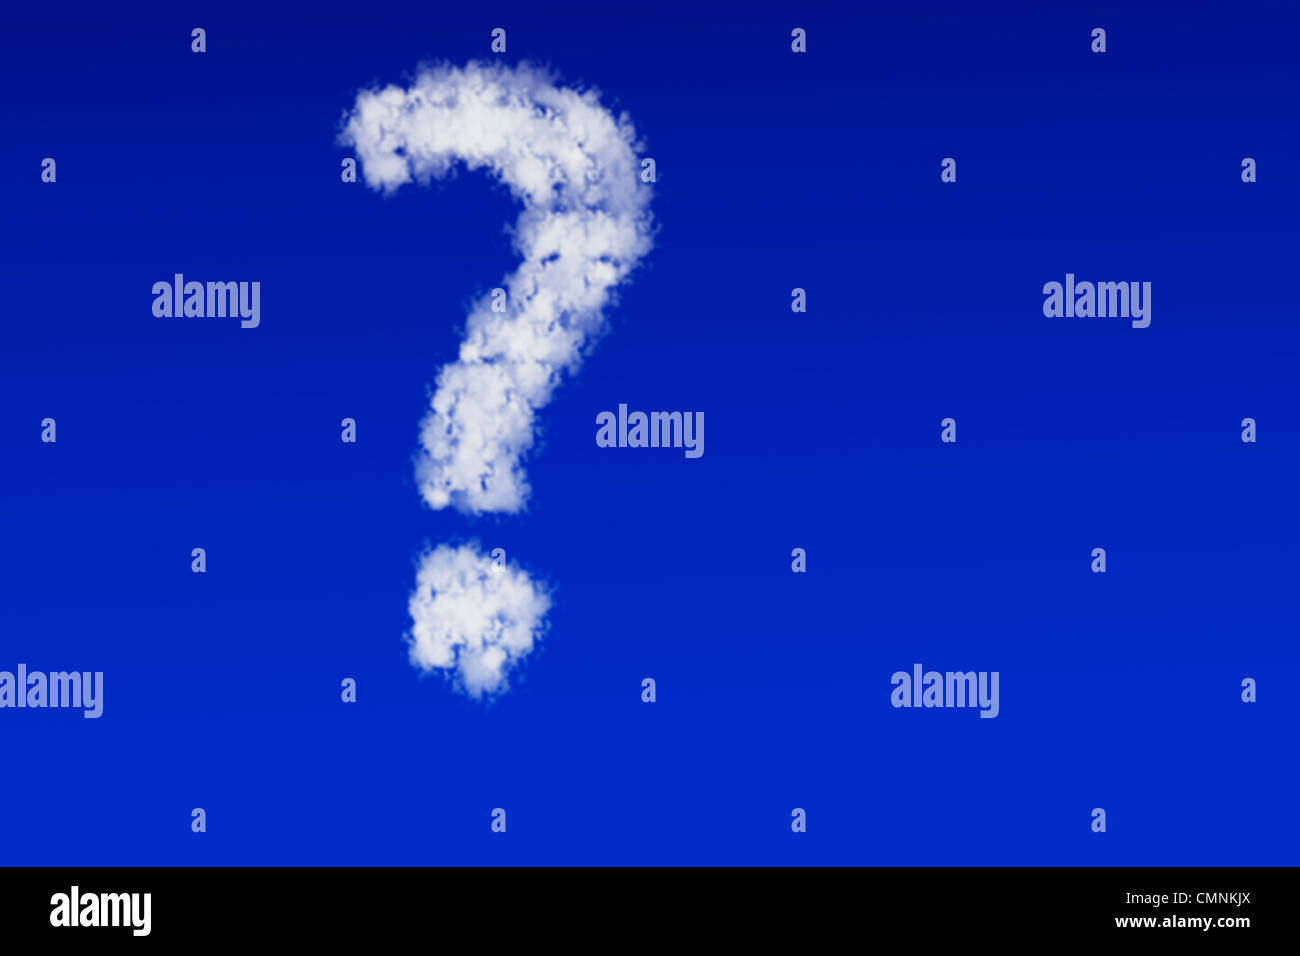 Wolken in Form eines Fragezeichens schweben am blauen Himmel | Clouds in the form of a question mark floating in the blue sky Stock Photo